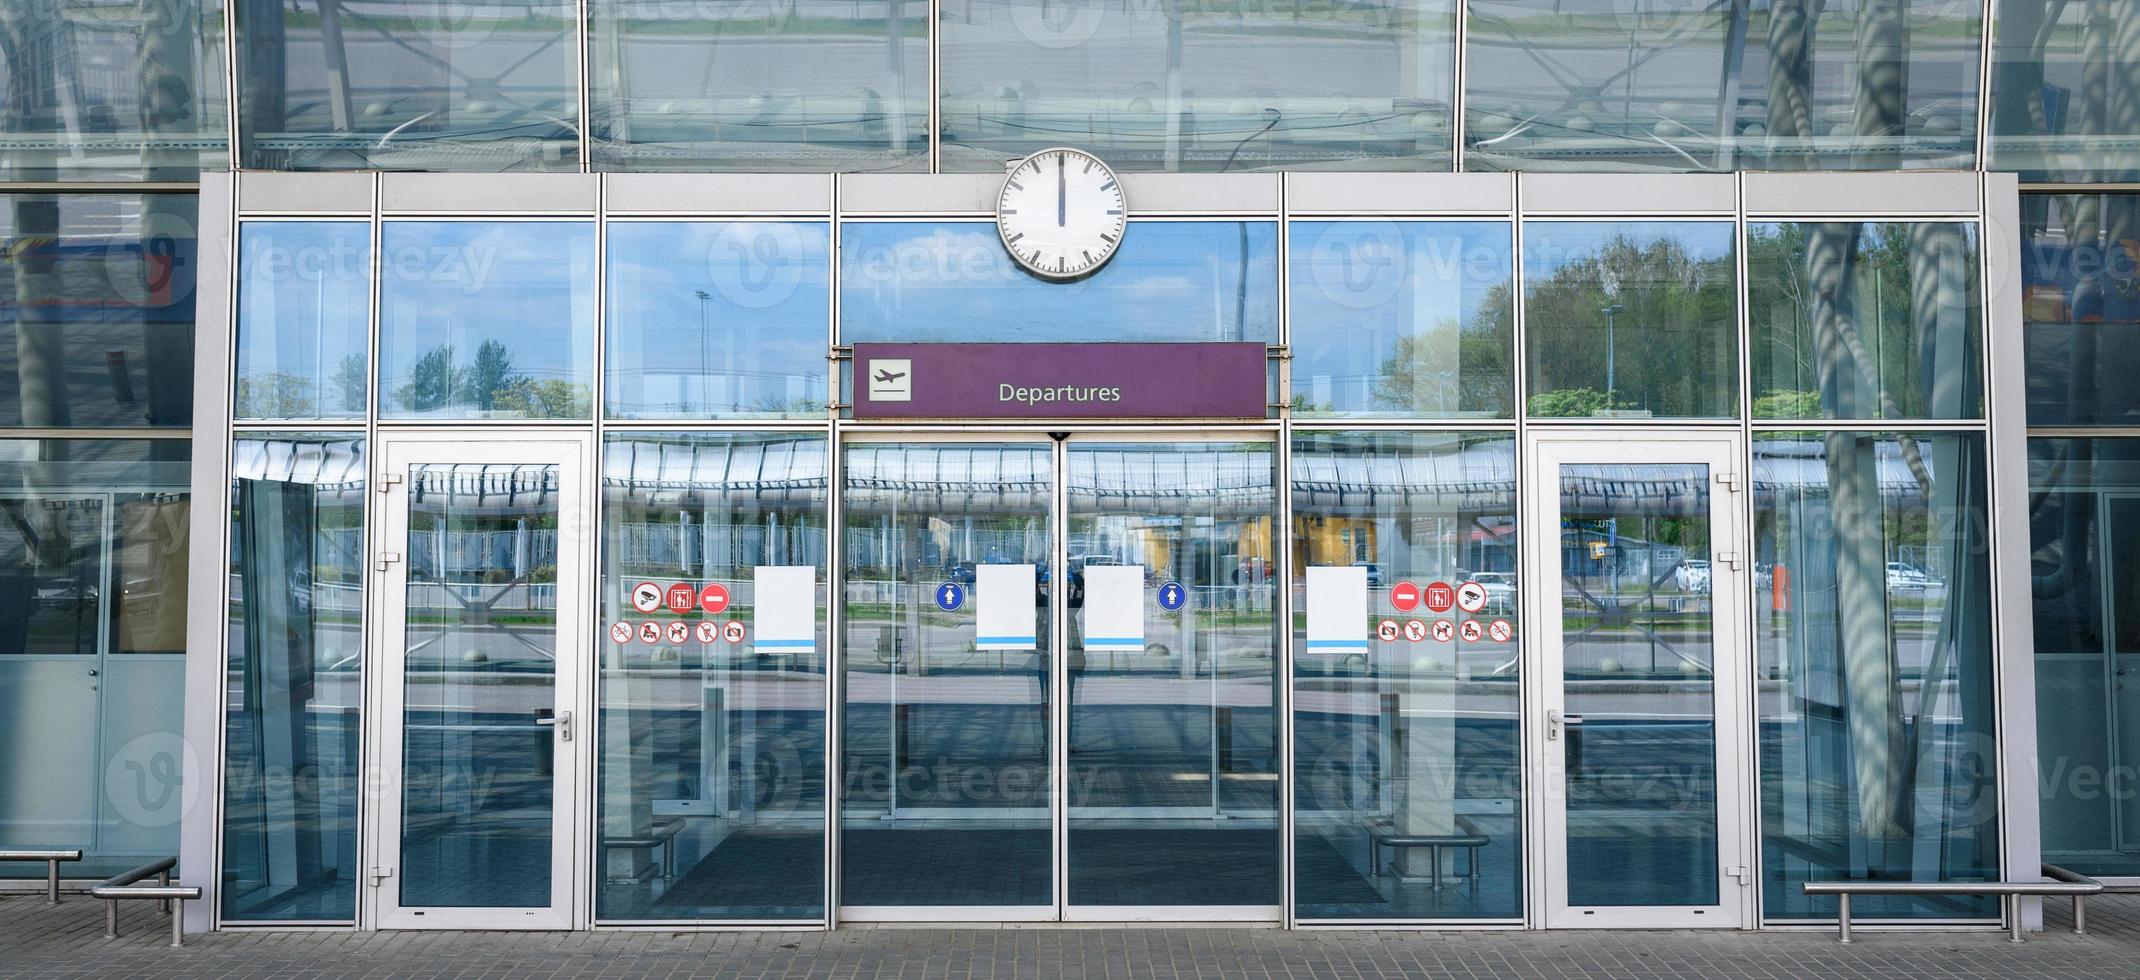 porte di vetro chiuse dell'aeroporto con un cartello di partenze foto